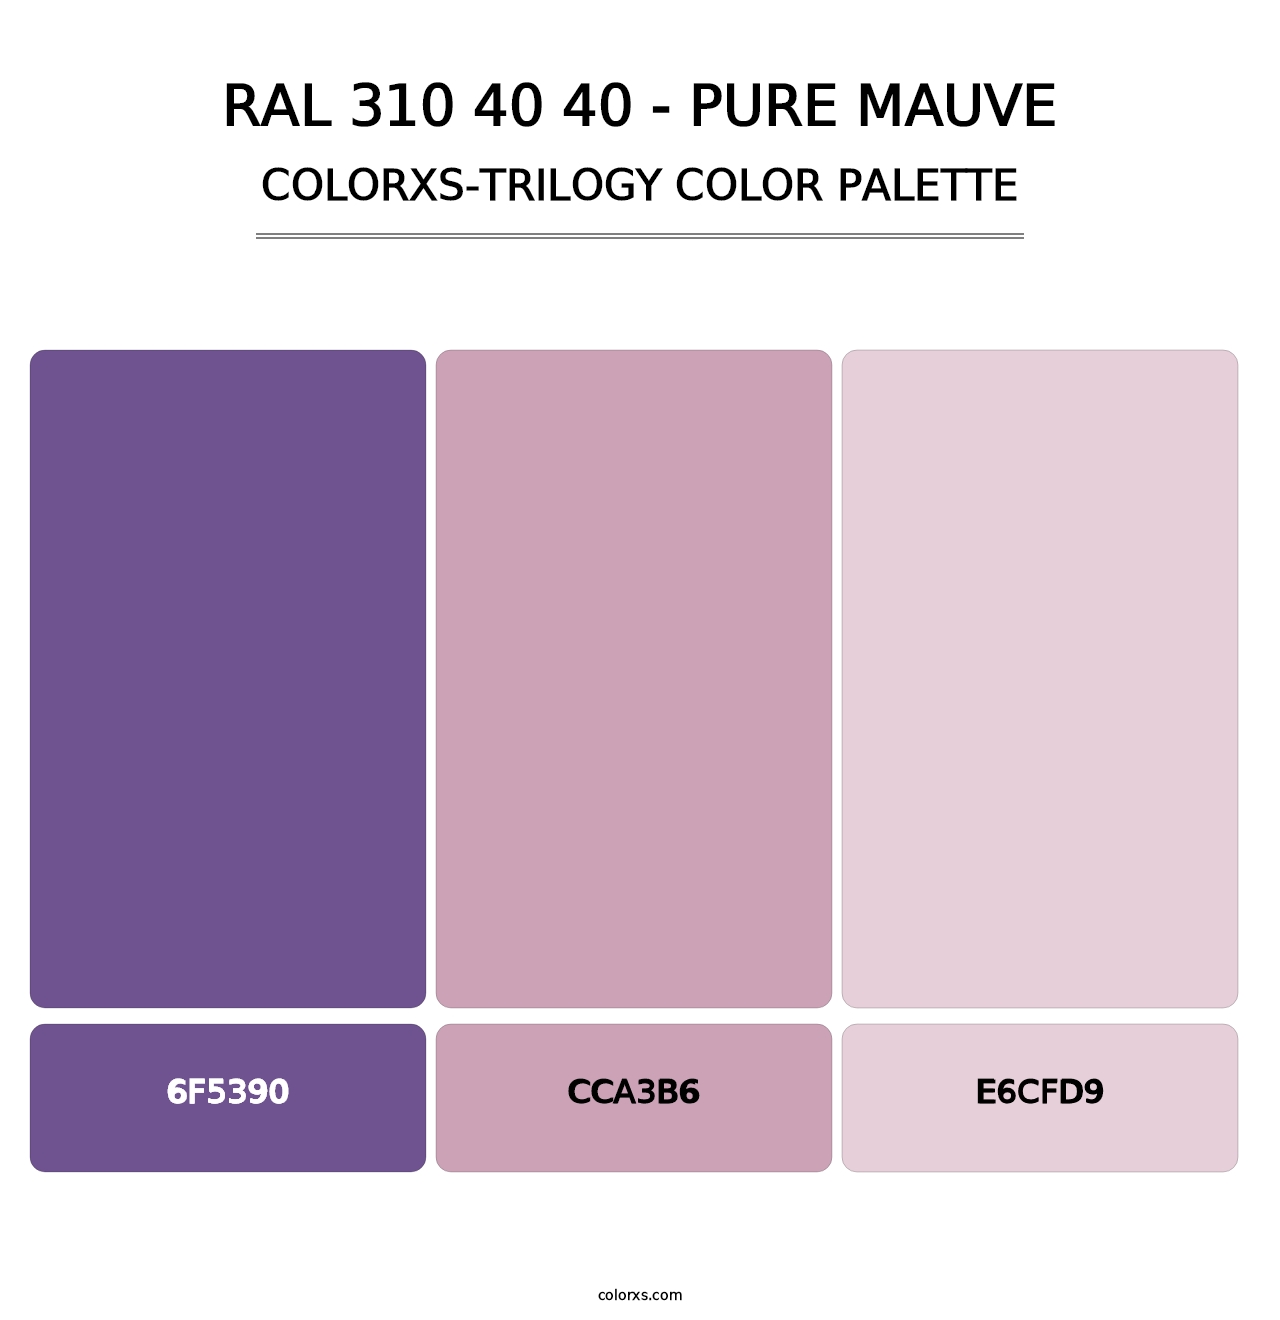 RAL 310 40 40 - Pure Mauve - Colorxs Trilogy Palette